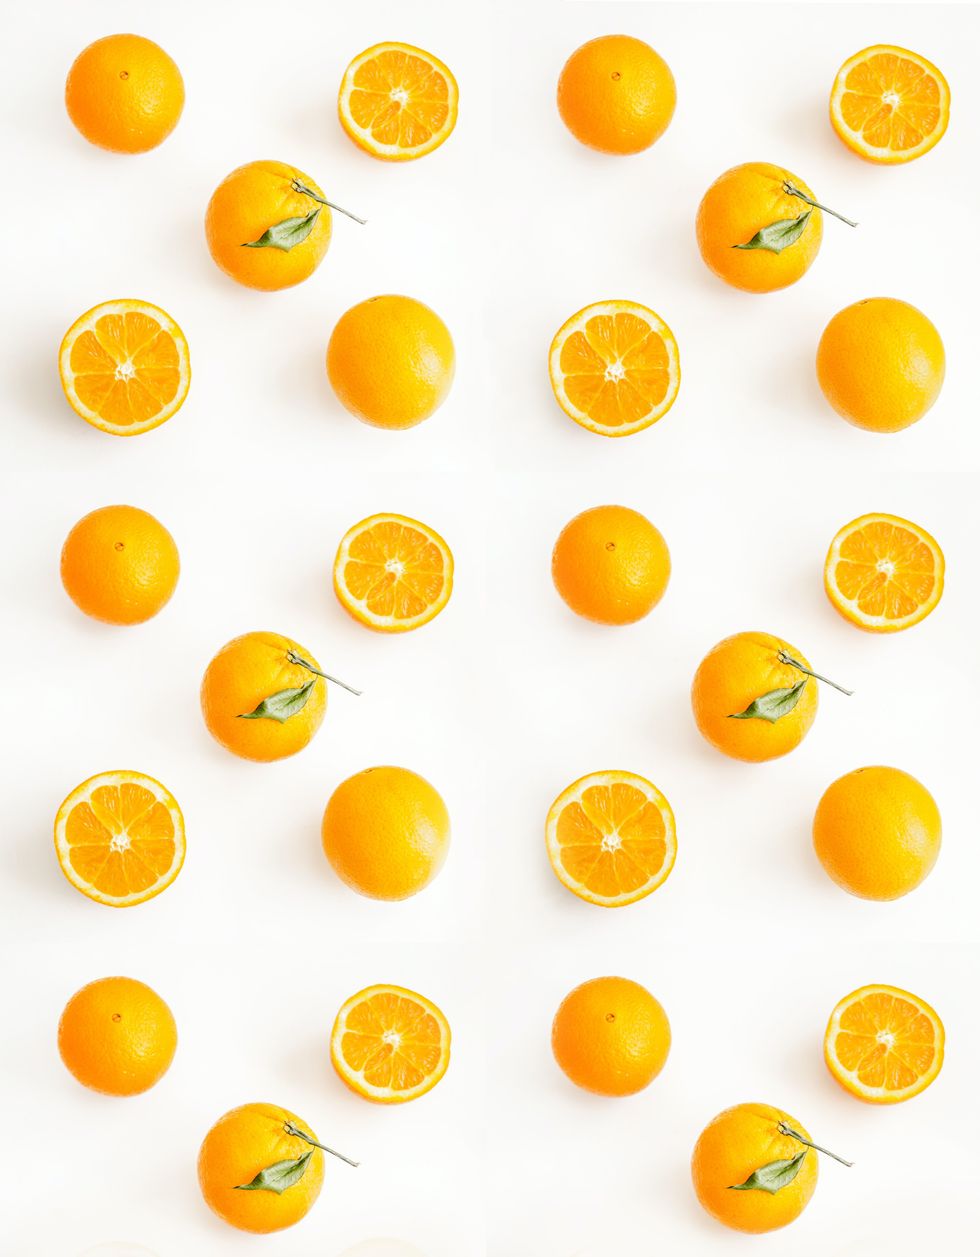 orange fruits and orange slices arranged on a white background